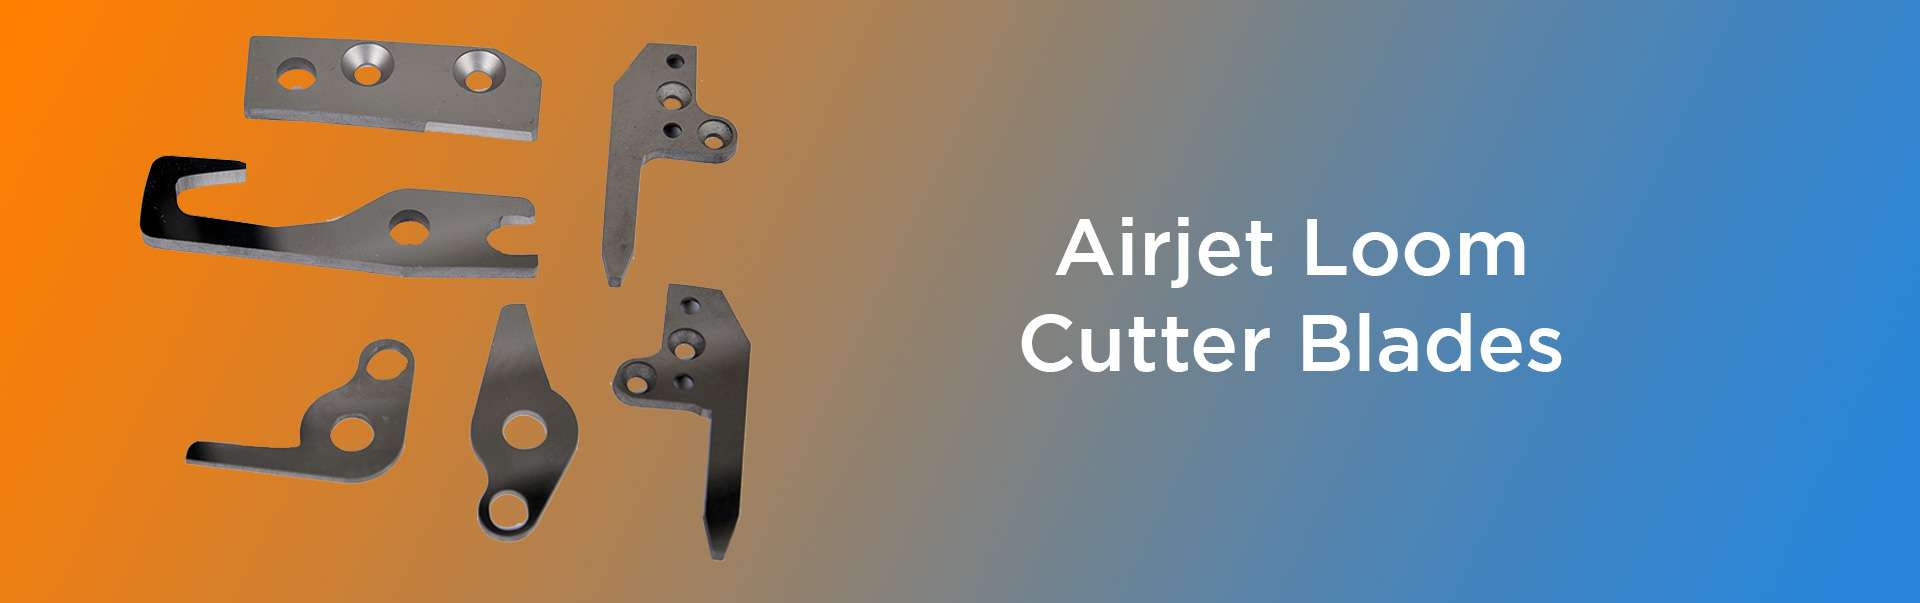 Airjet Loom Cutter Blades in Gujarat